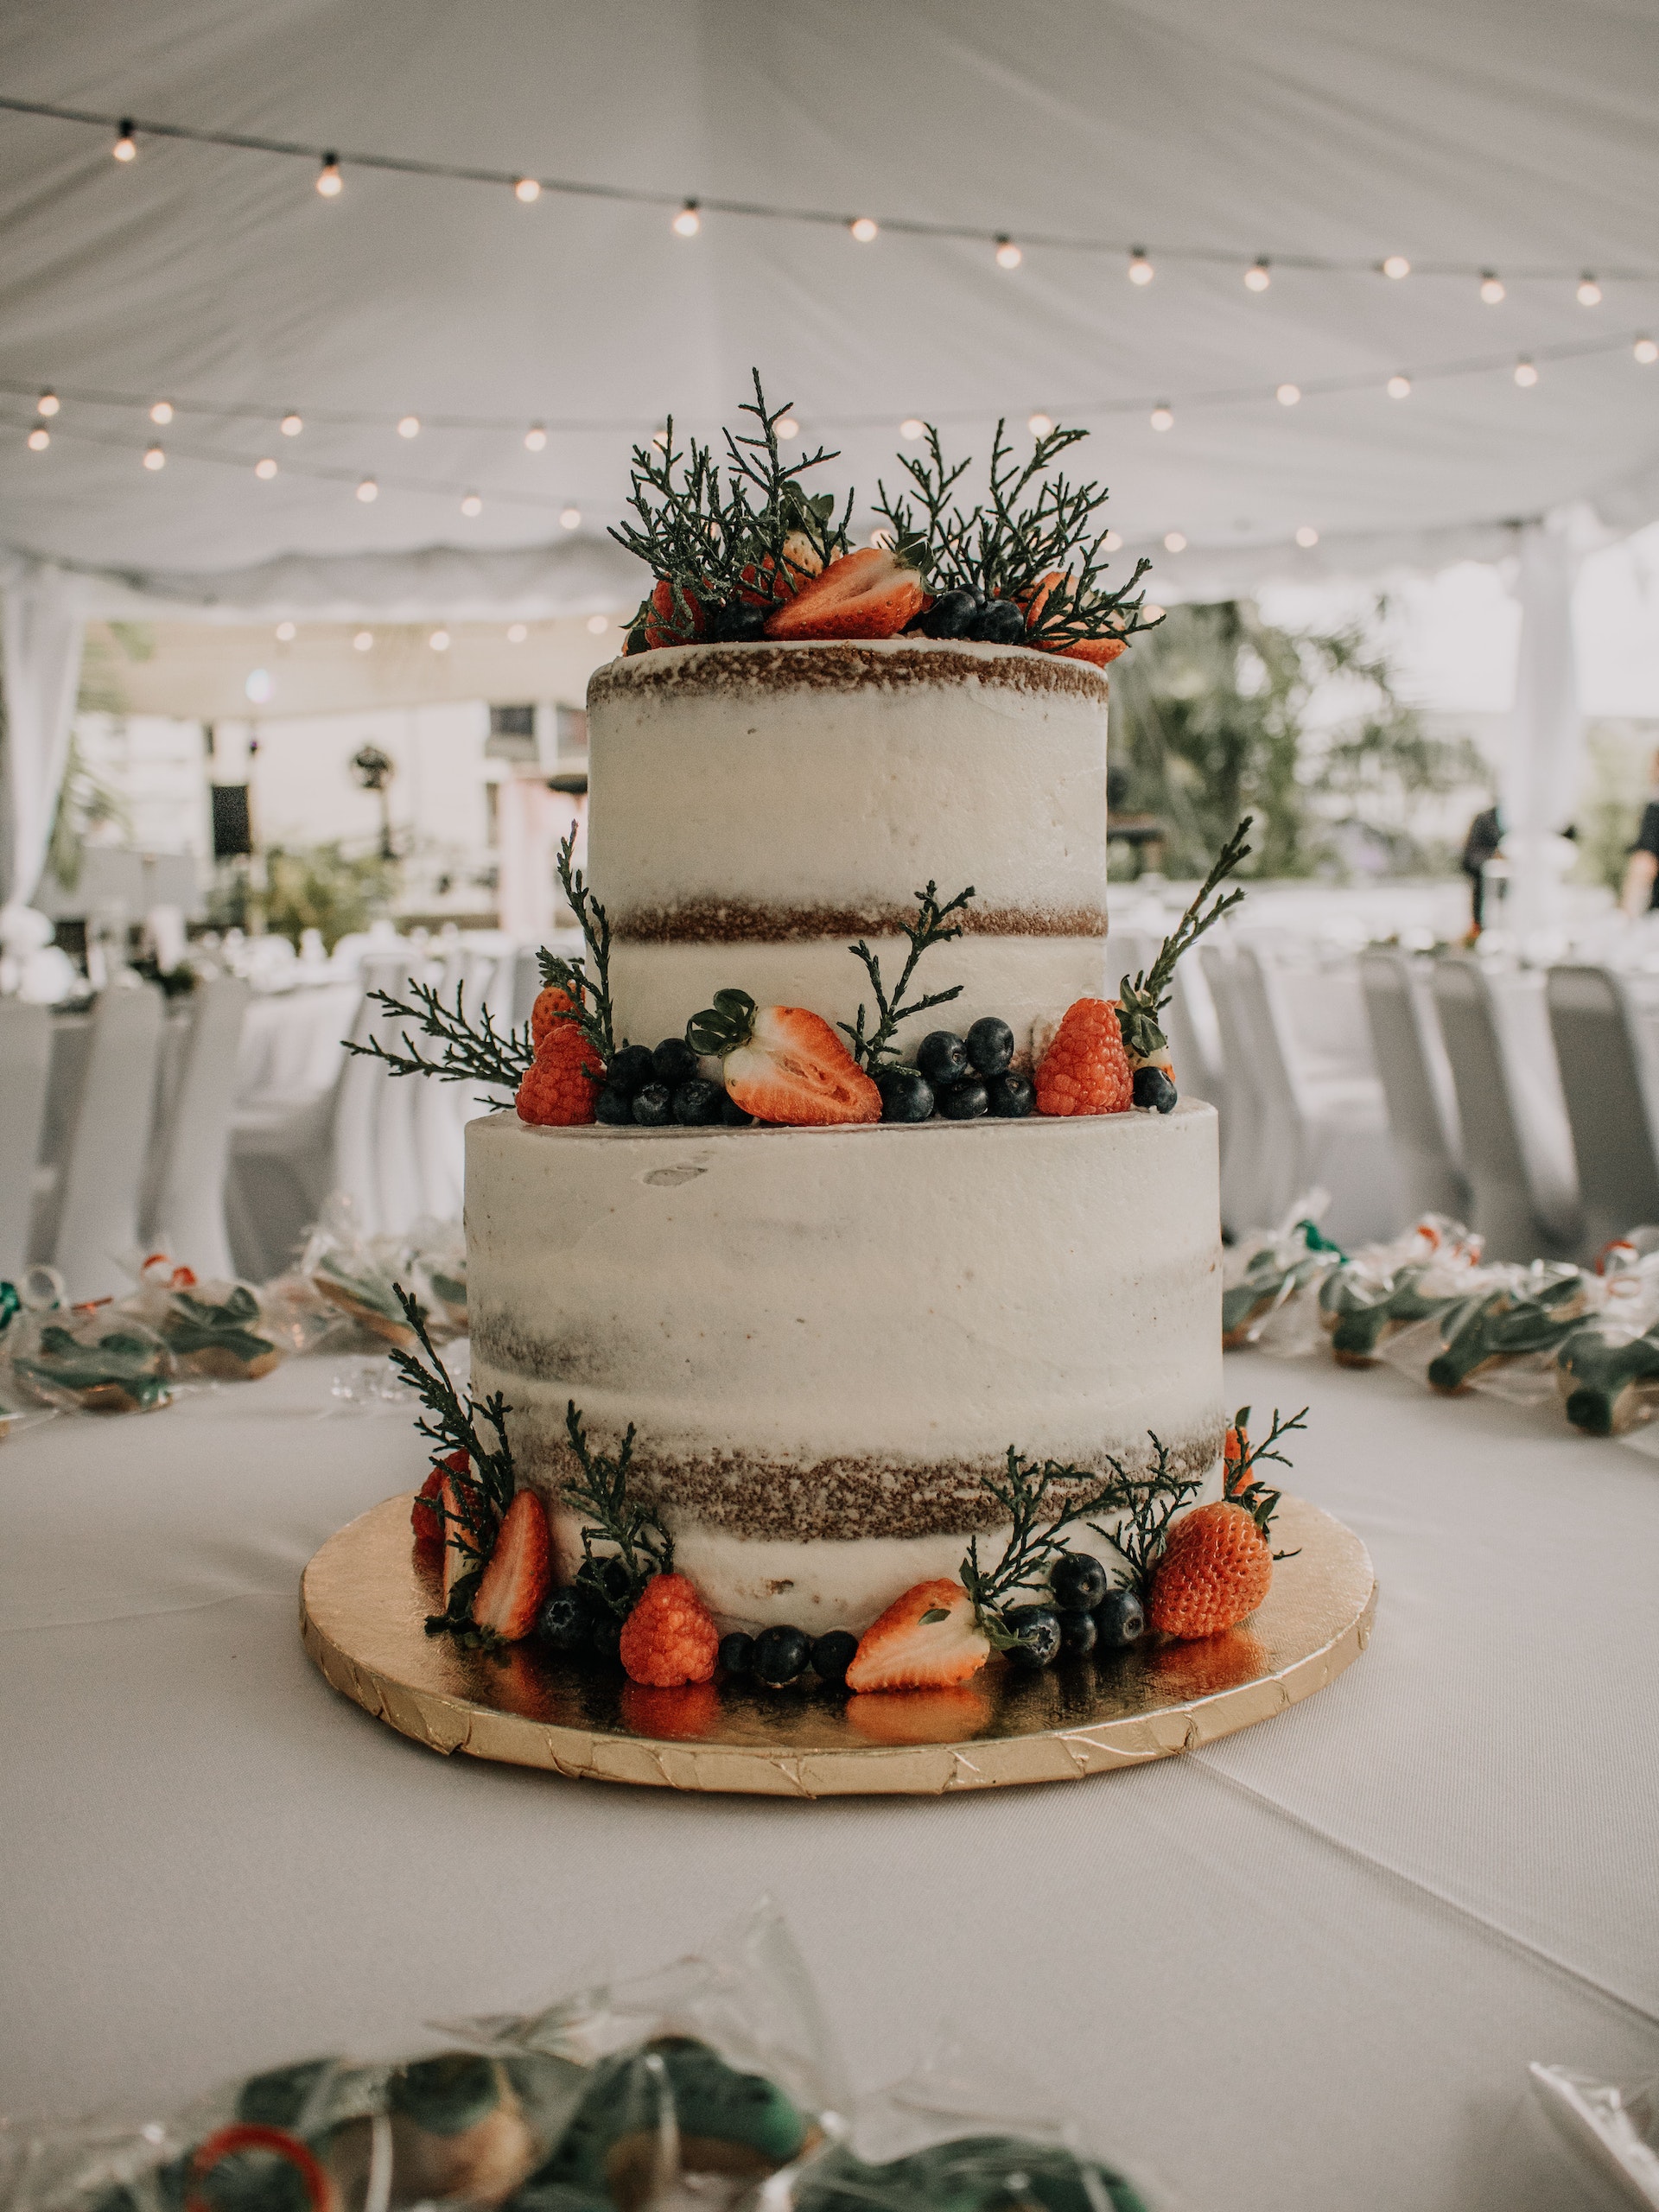 Un gâteau de mariage | Source : Pexels